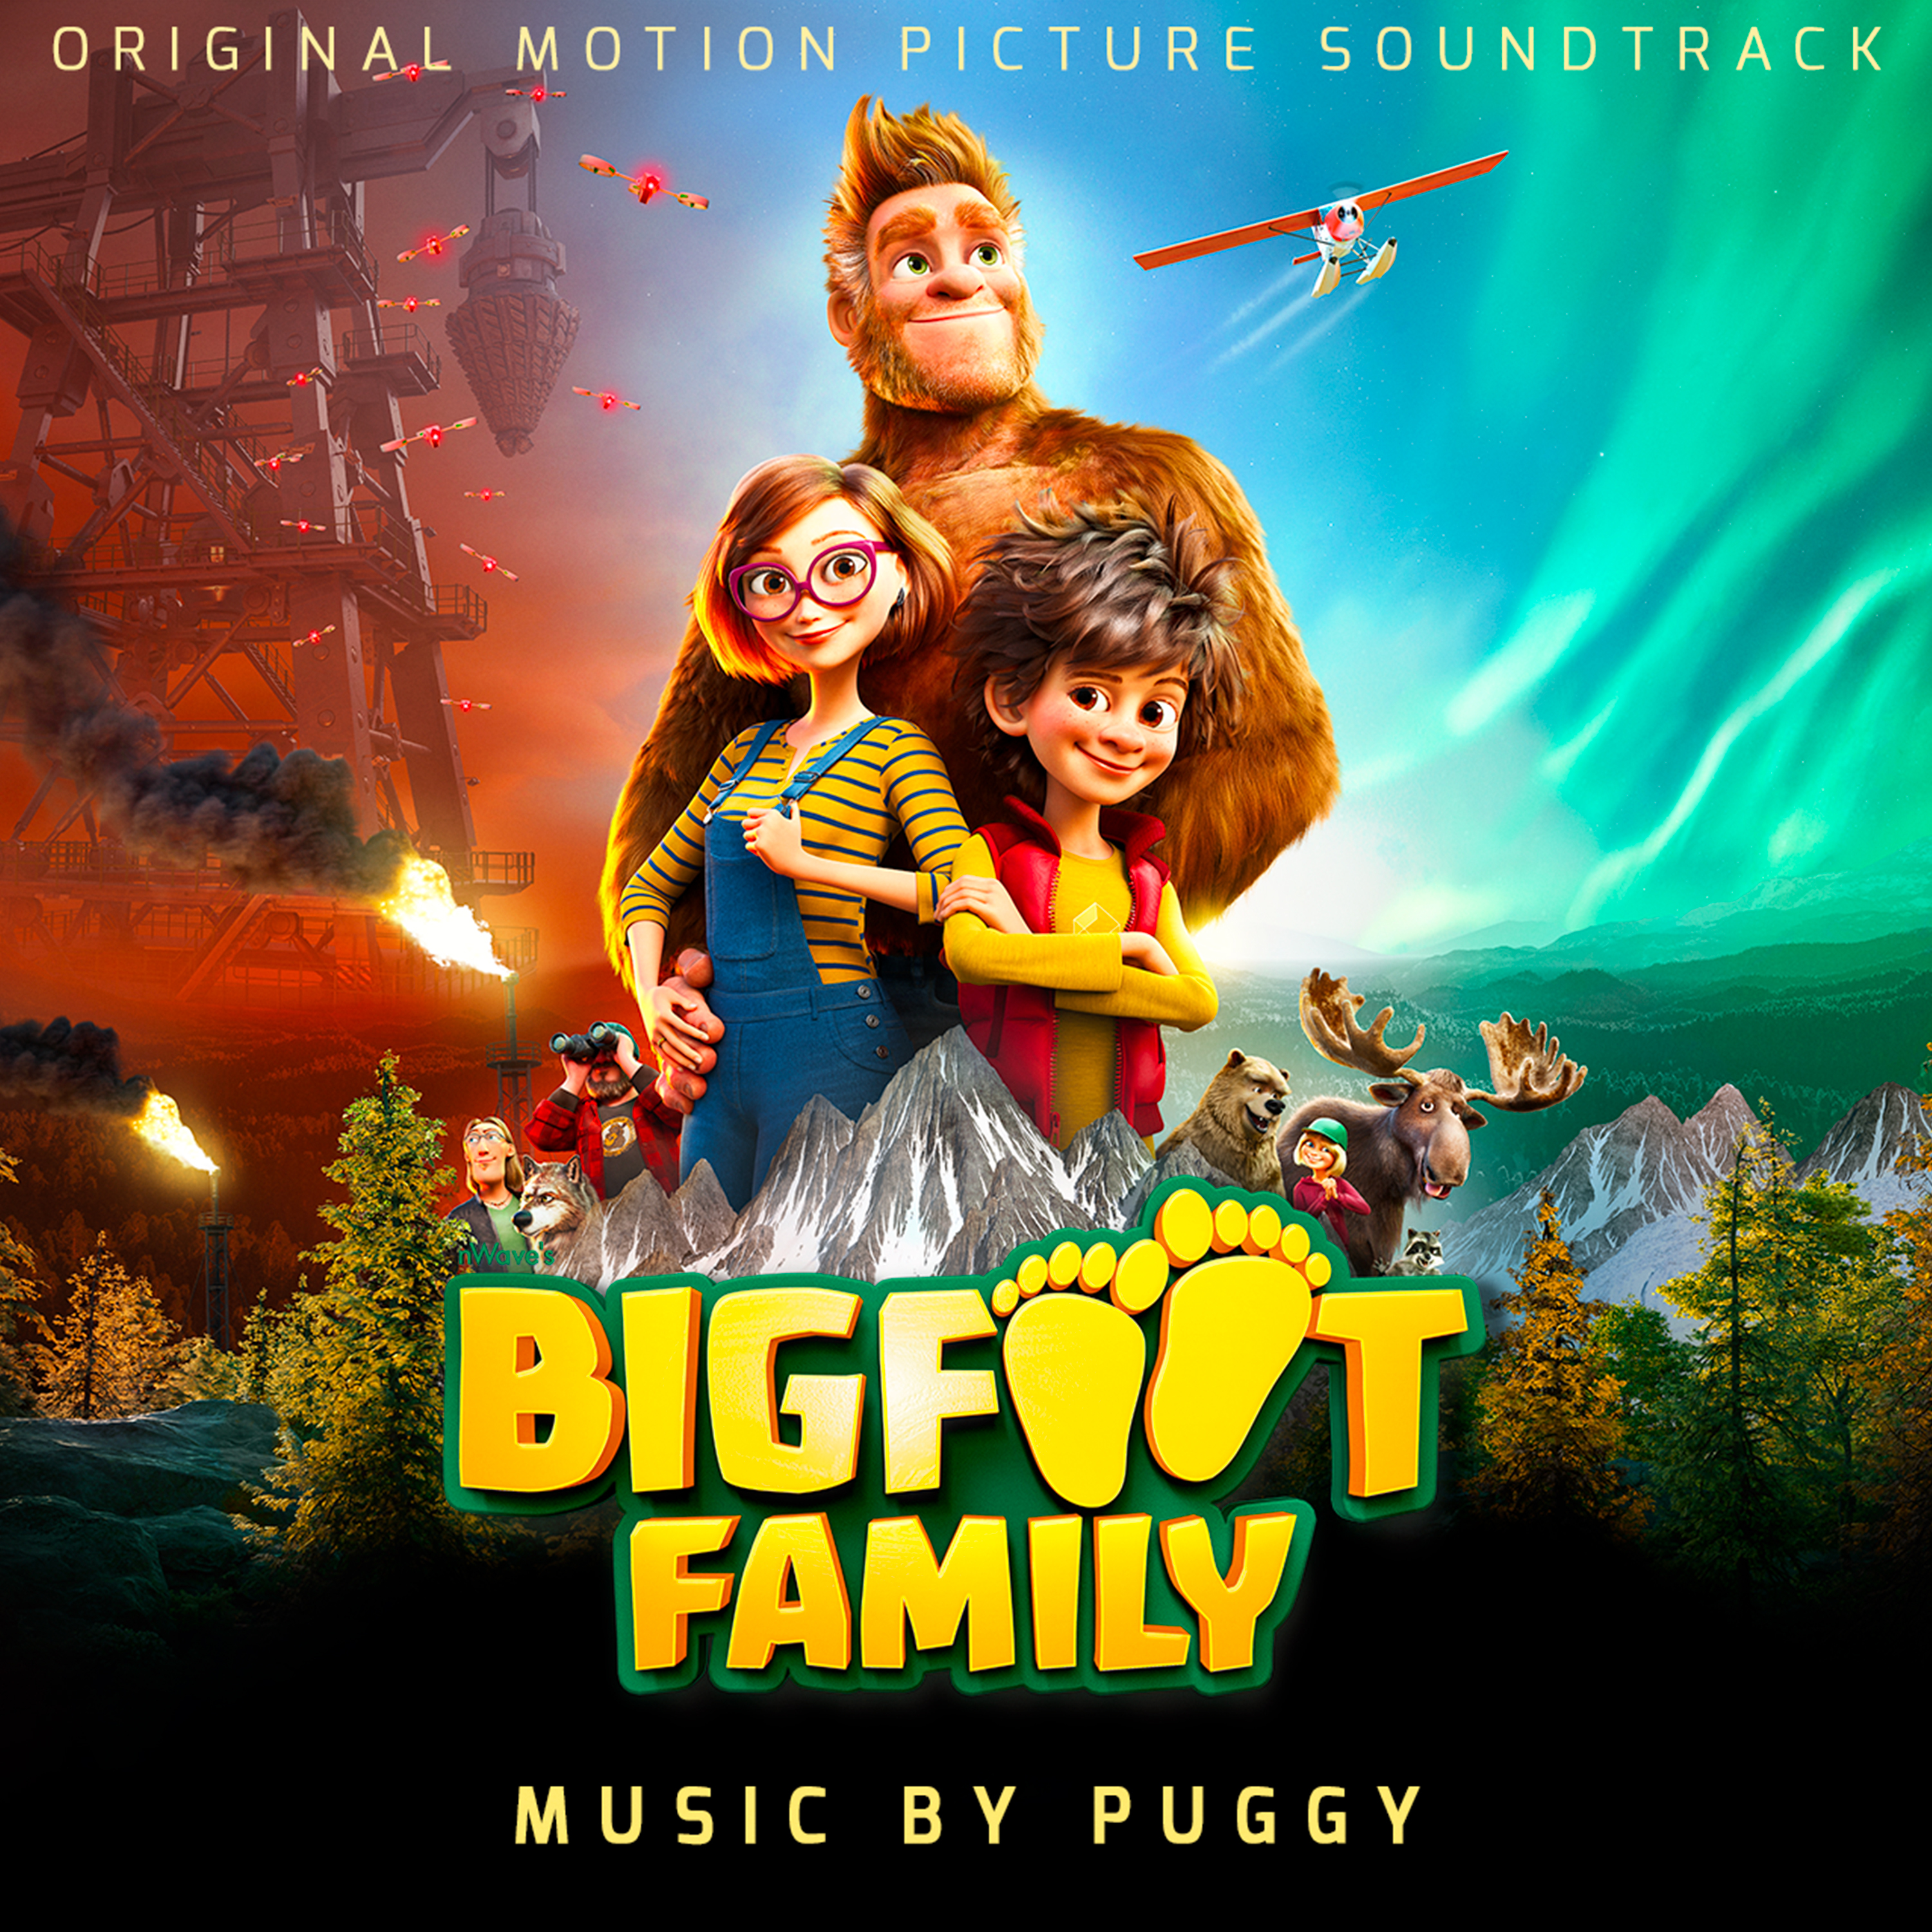 Brussels Pop-Rock-Trio Puggy Lanceert Muziek Voor Bigfoot Family 